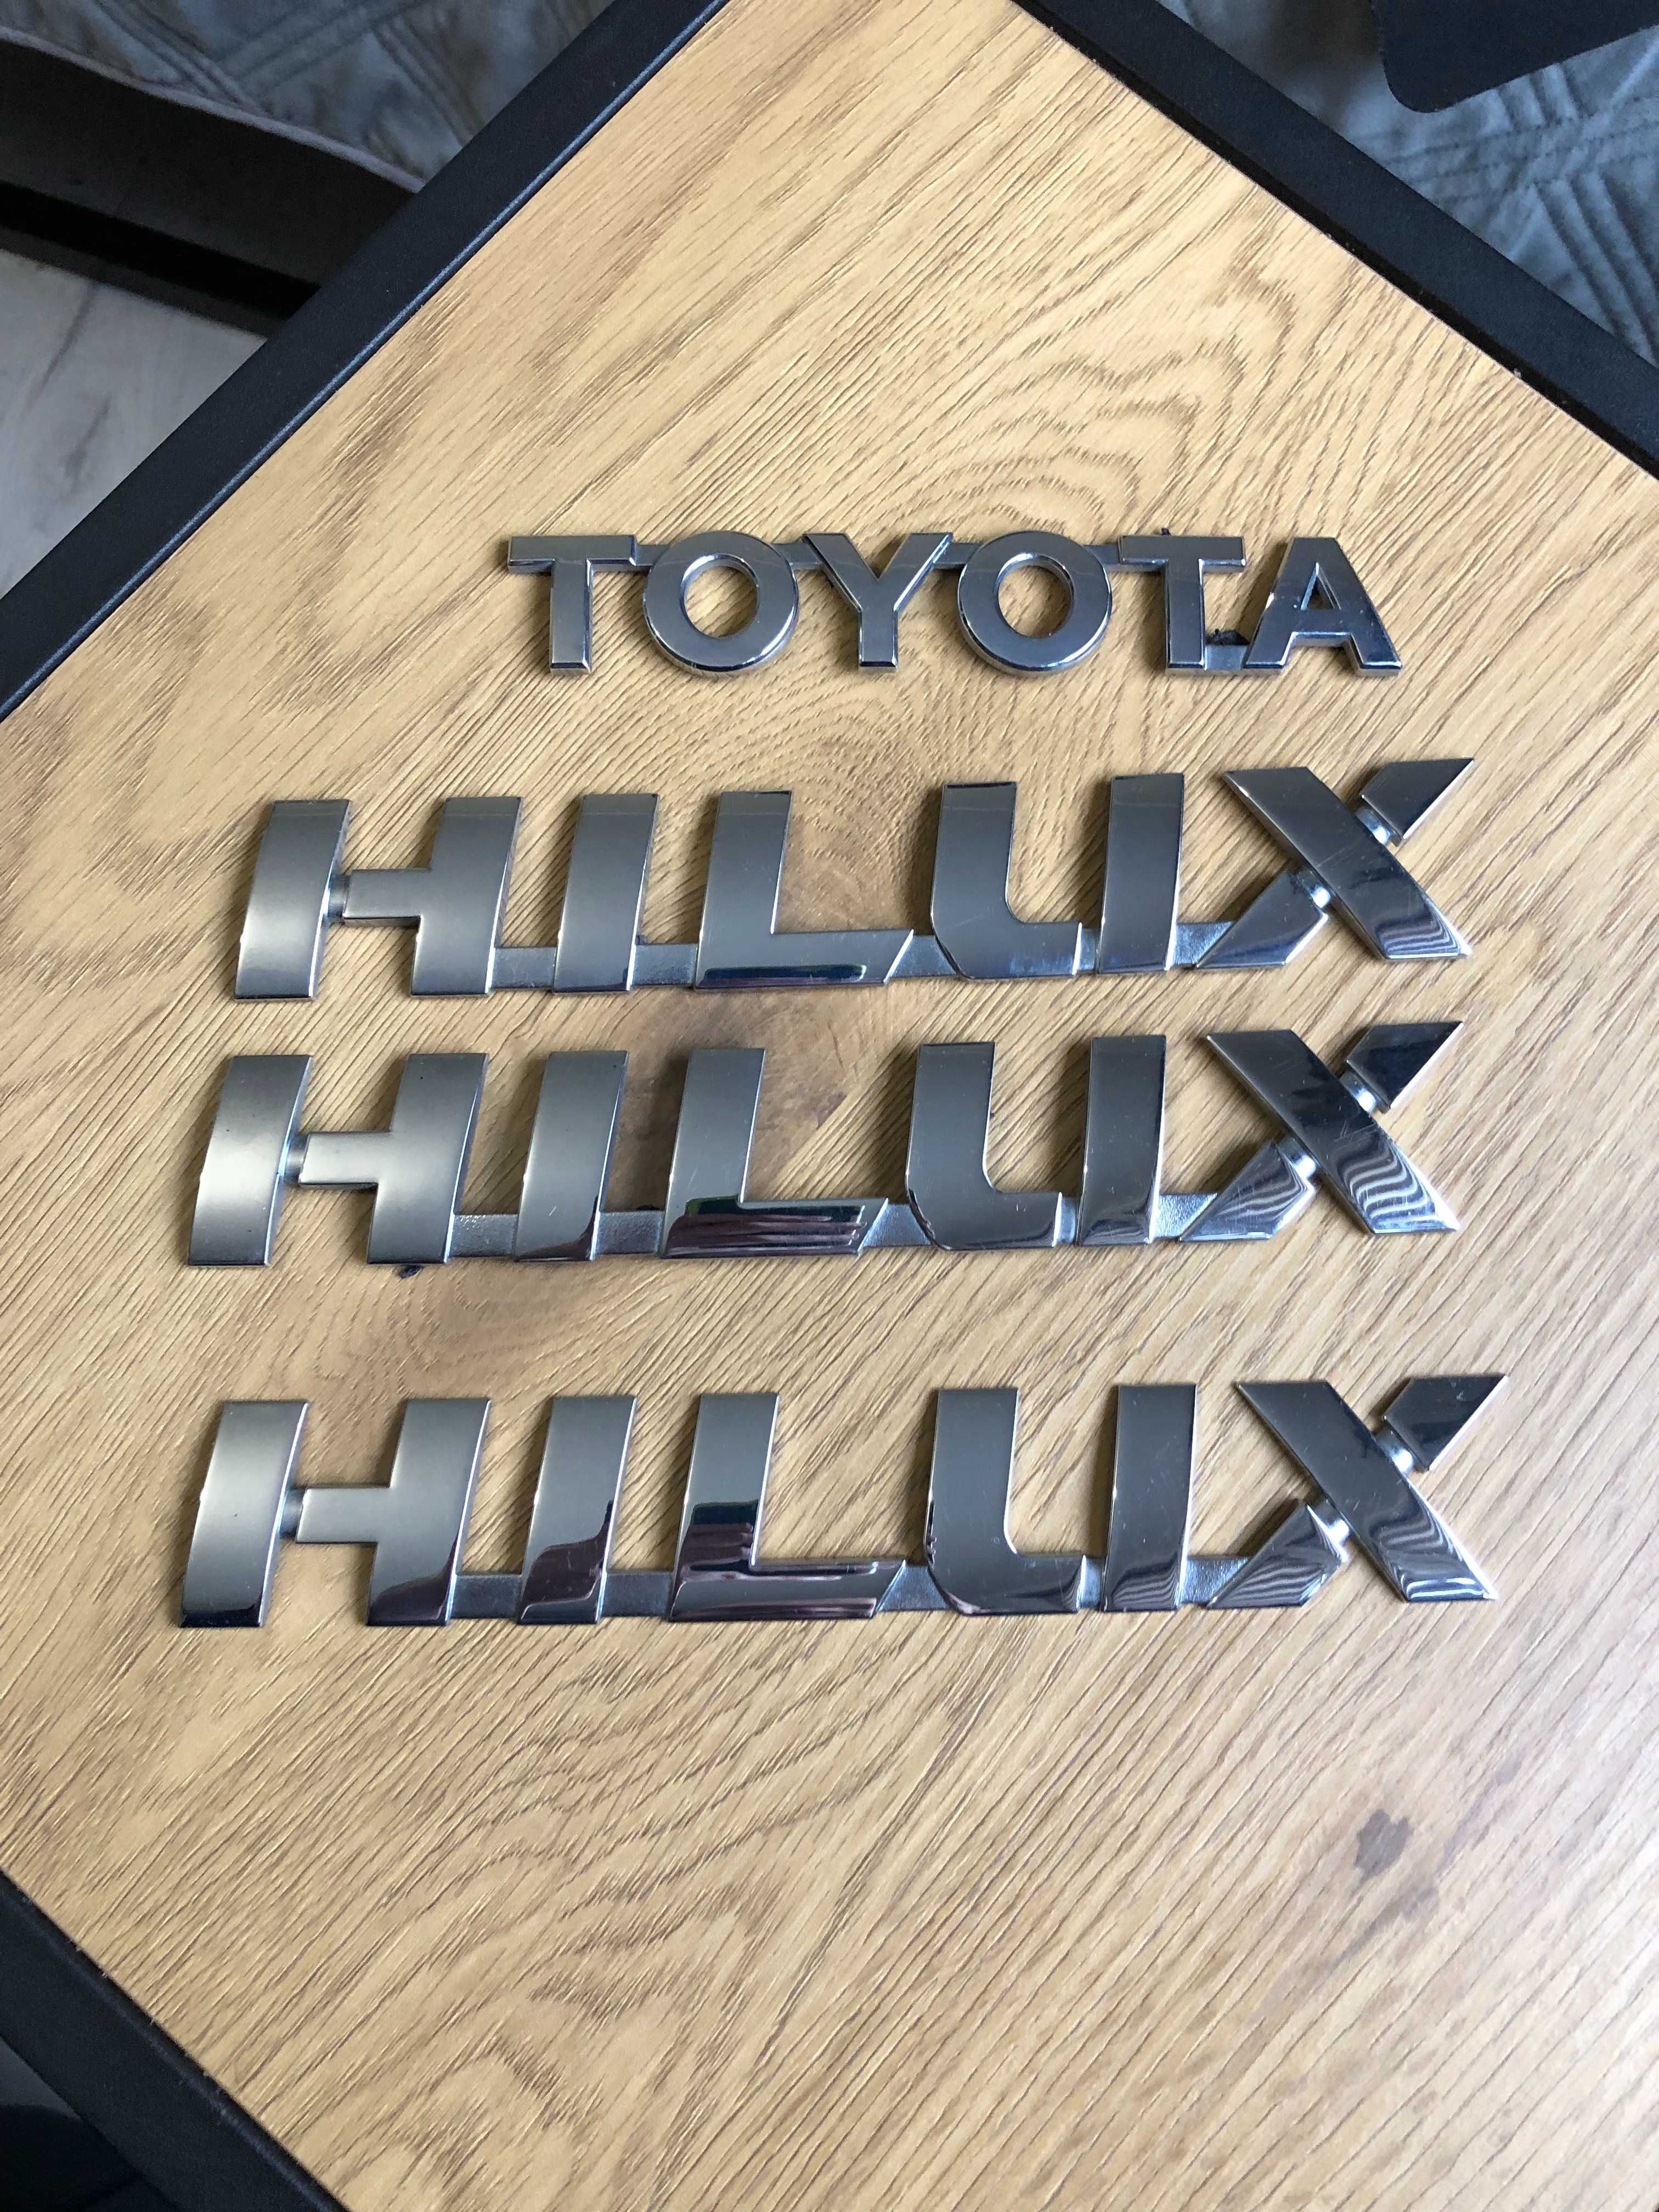 emblemat znaczek napis logo Toyota HILUX